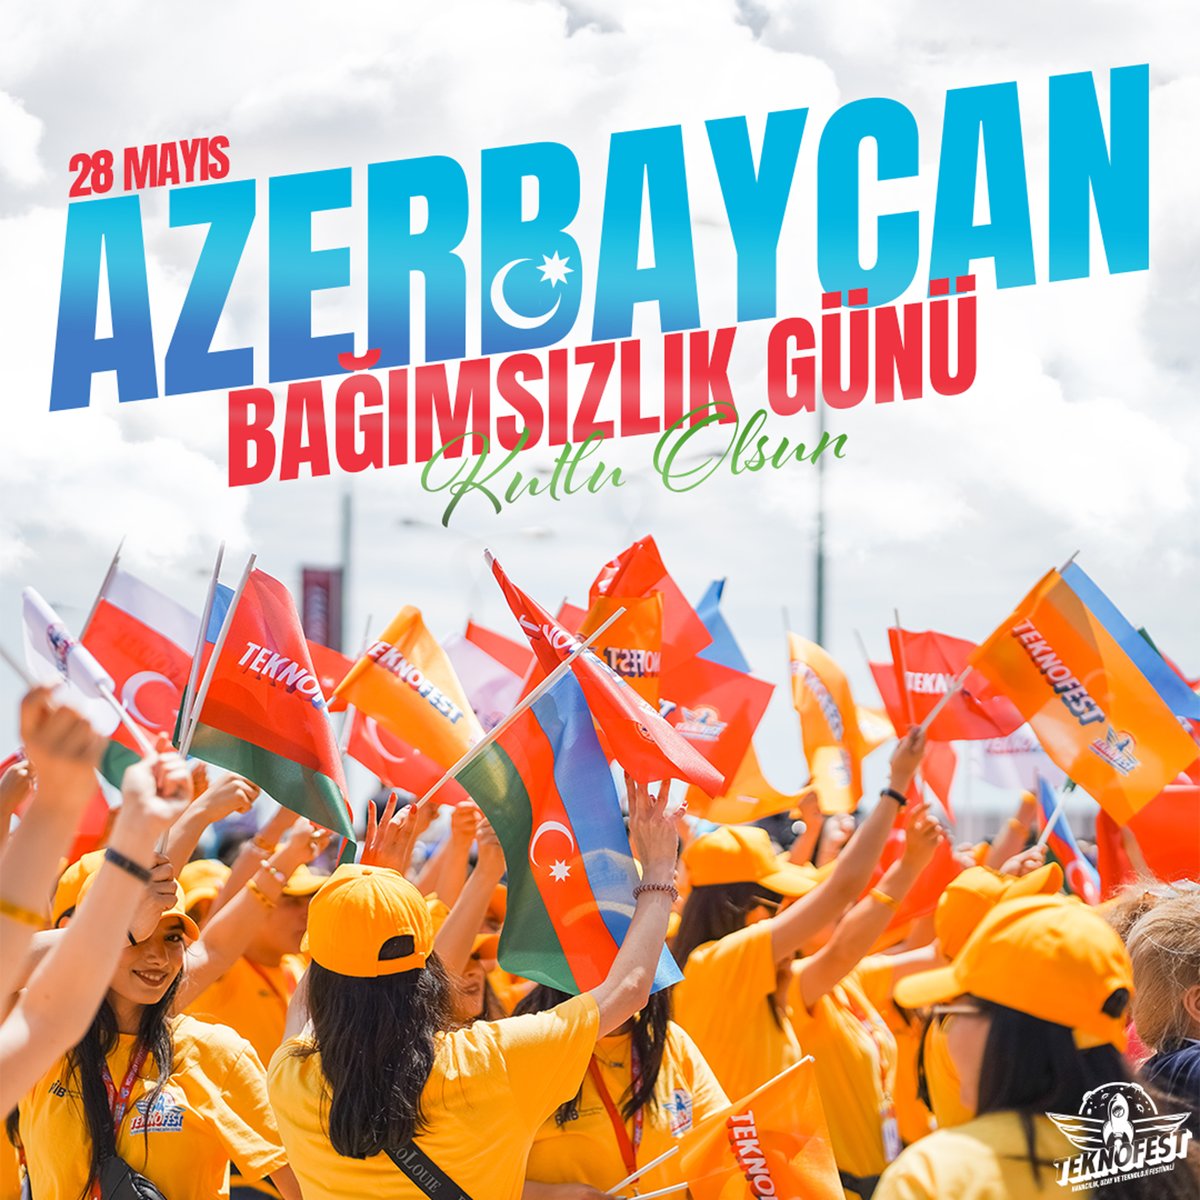 Kederi kederimiz, sevinci sevincimiz olan kardeş ülke Azerbaycan’ın Bağımsızlık Günü’nü en kalbî hislerimizle kutlarız! 🇹🇷🇦🇿 Kədəri kədərimiz, sevinci sevincimiz olan qardaş ölkəmiz Azərbaycan'ın Müstəqillik Günü'nü ən səmimi hisslərimizlə qeyd edirik! 🇹🇷🇦🇿